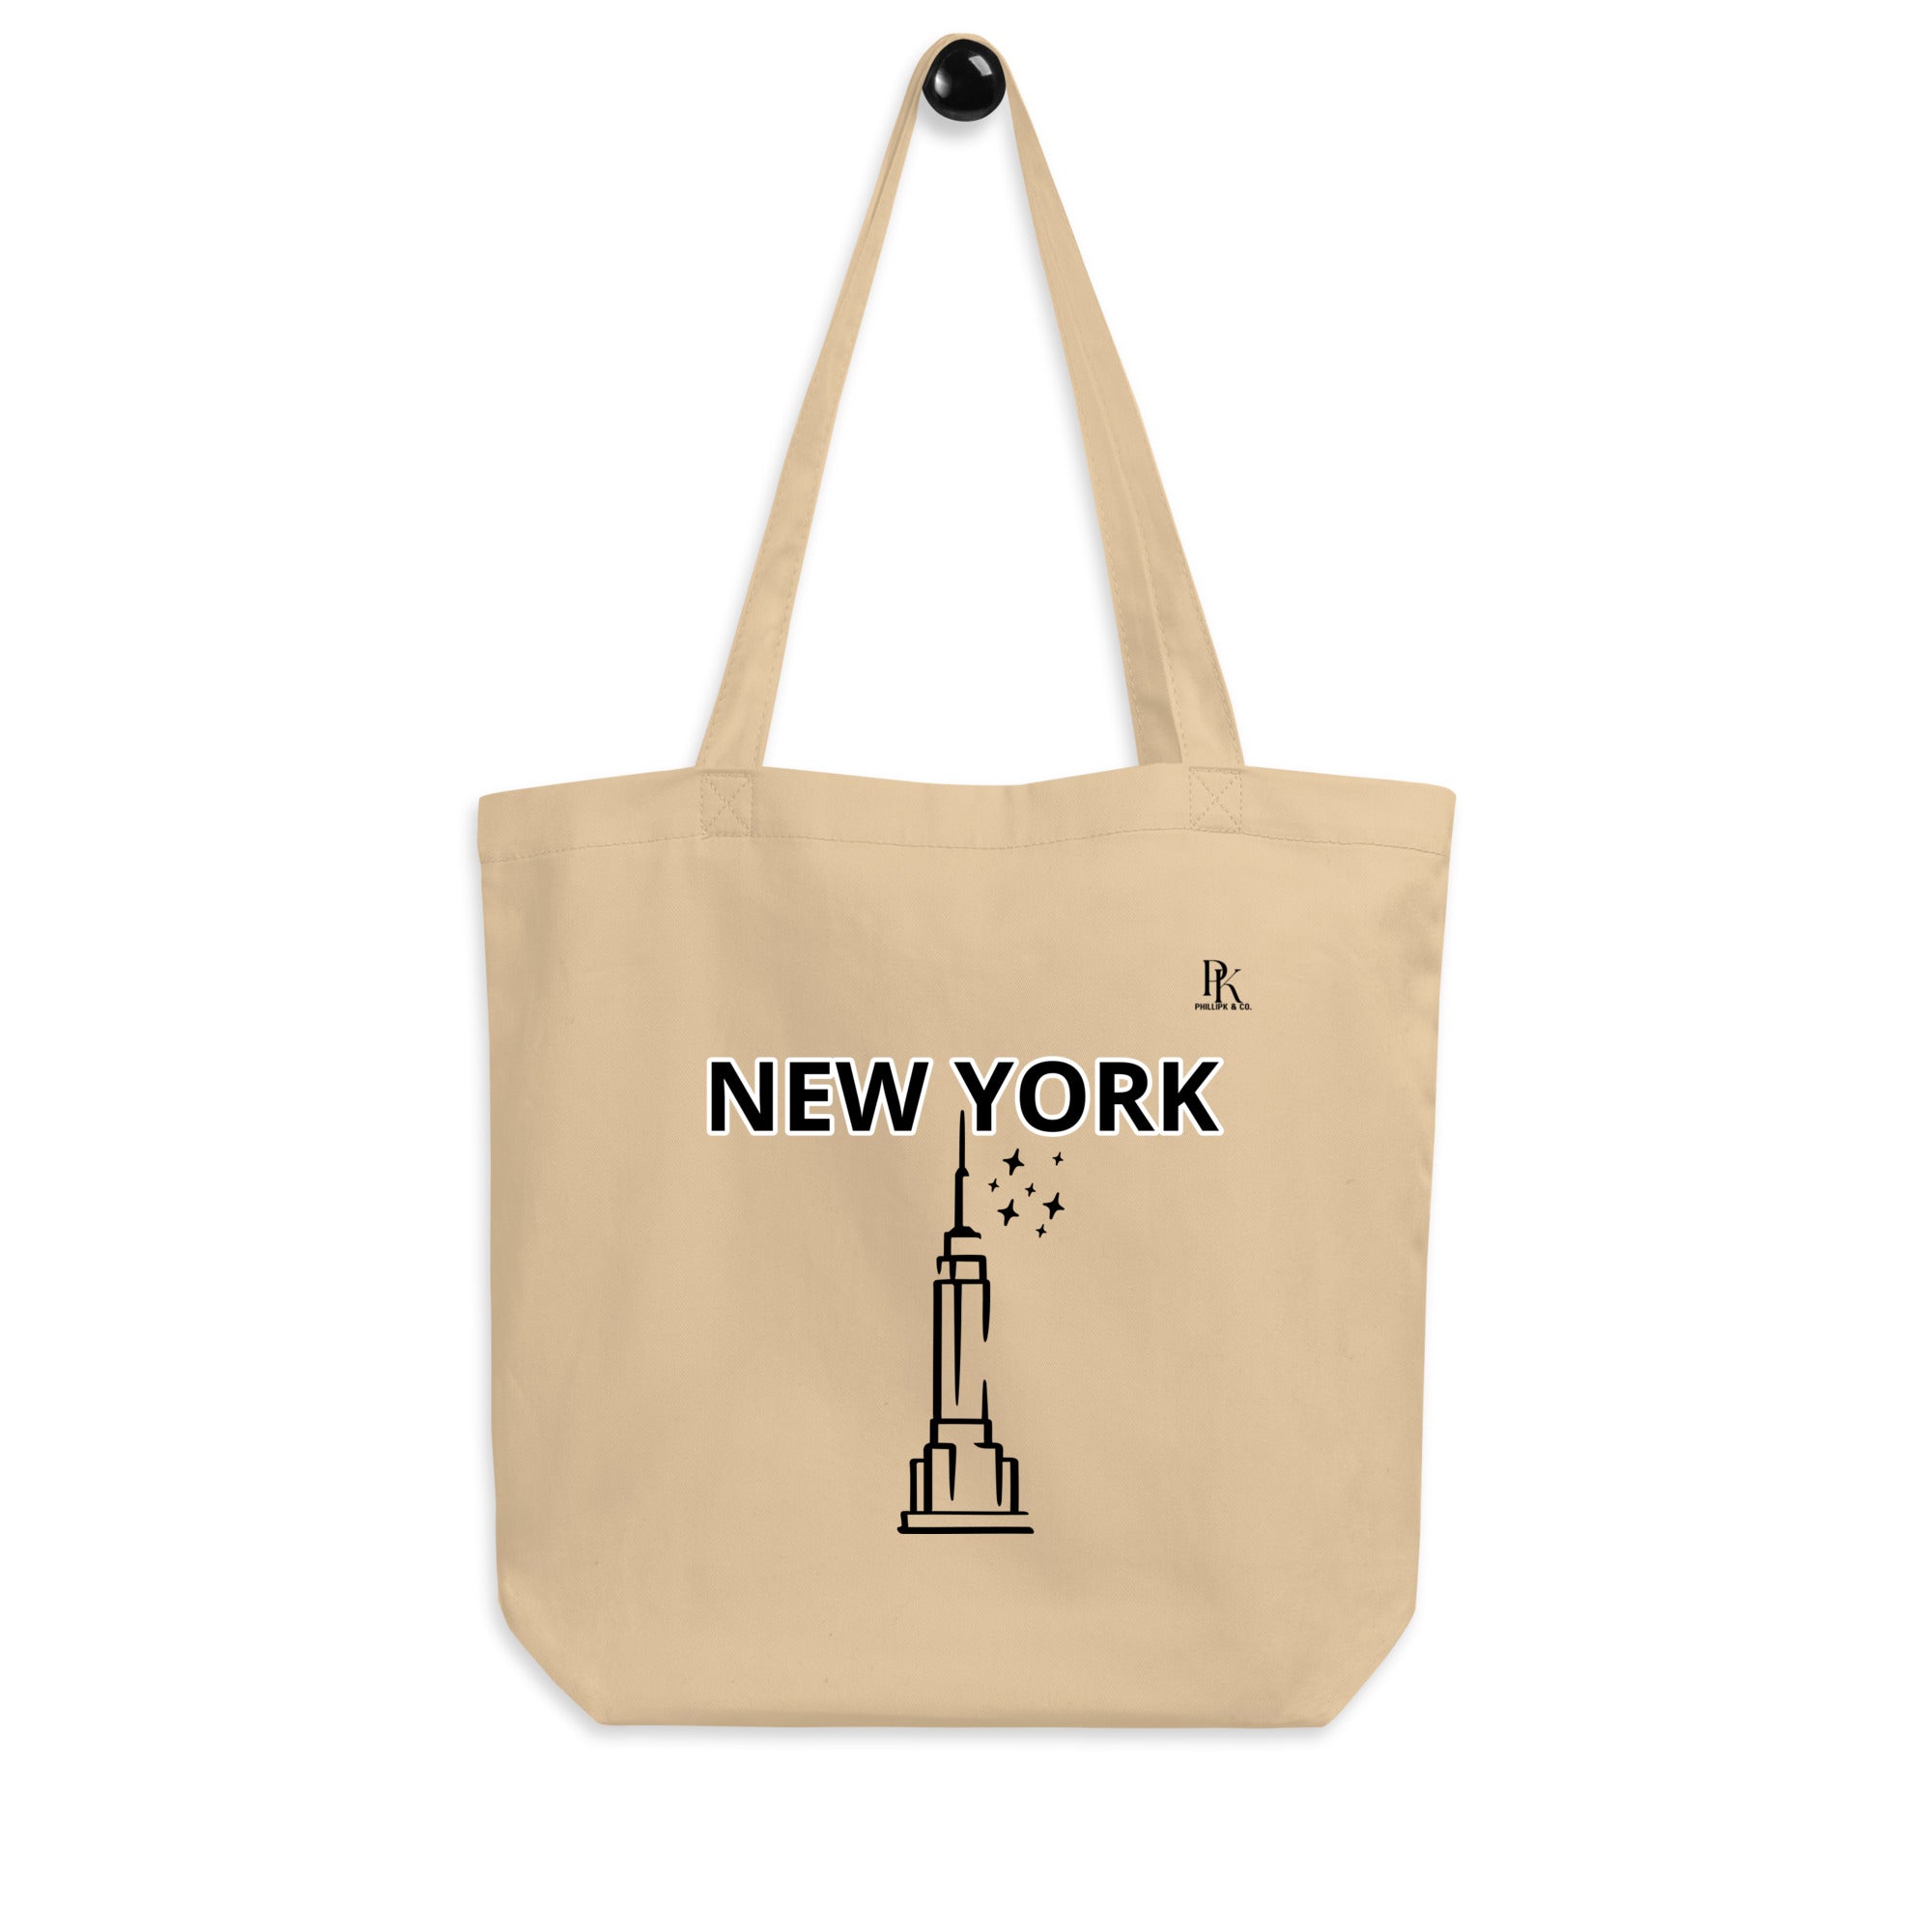 New York Eco Tote Bag